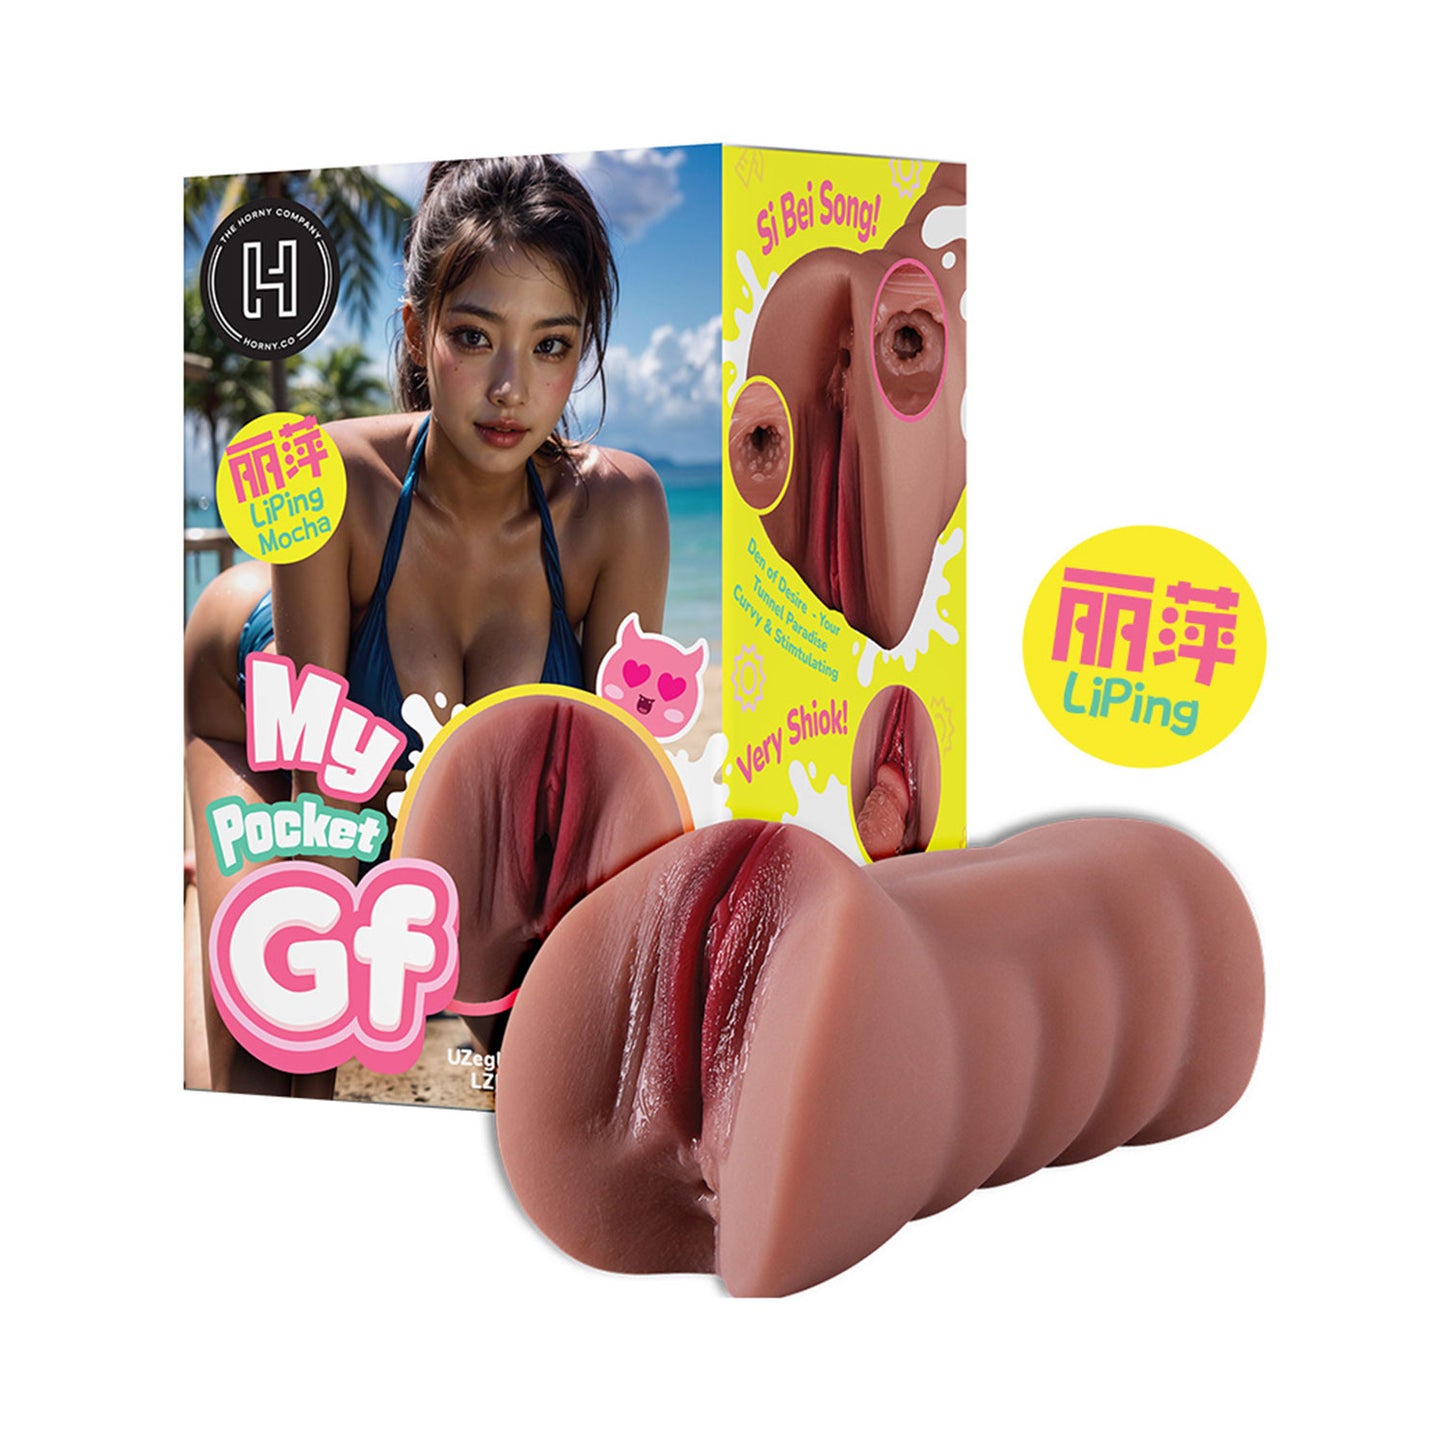 The Horny Company - My Pocket GF Li Ping Mocha Vagina and Anal Dual Masturbator